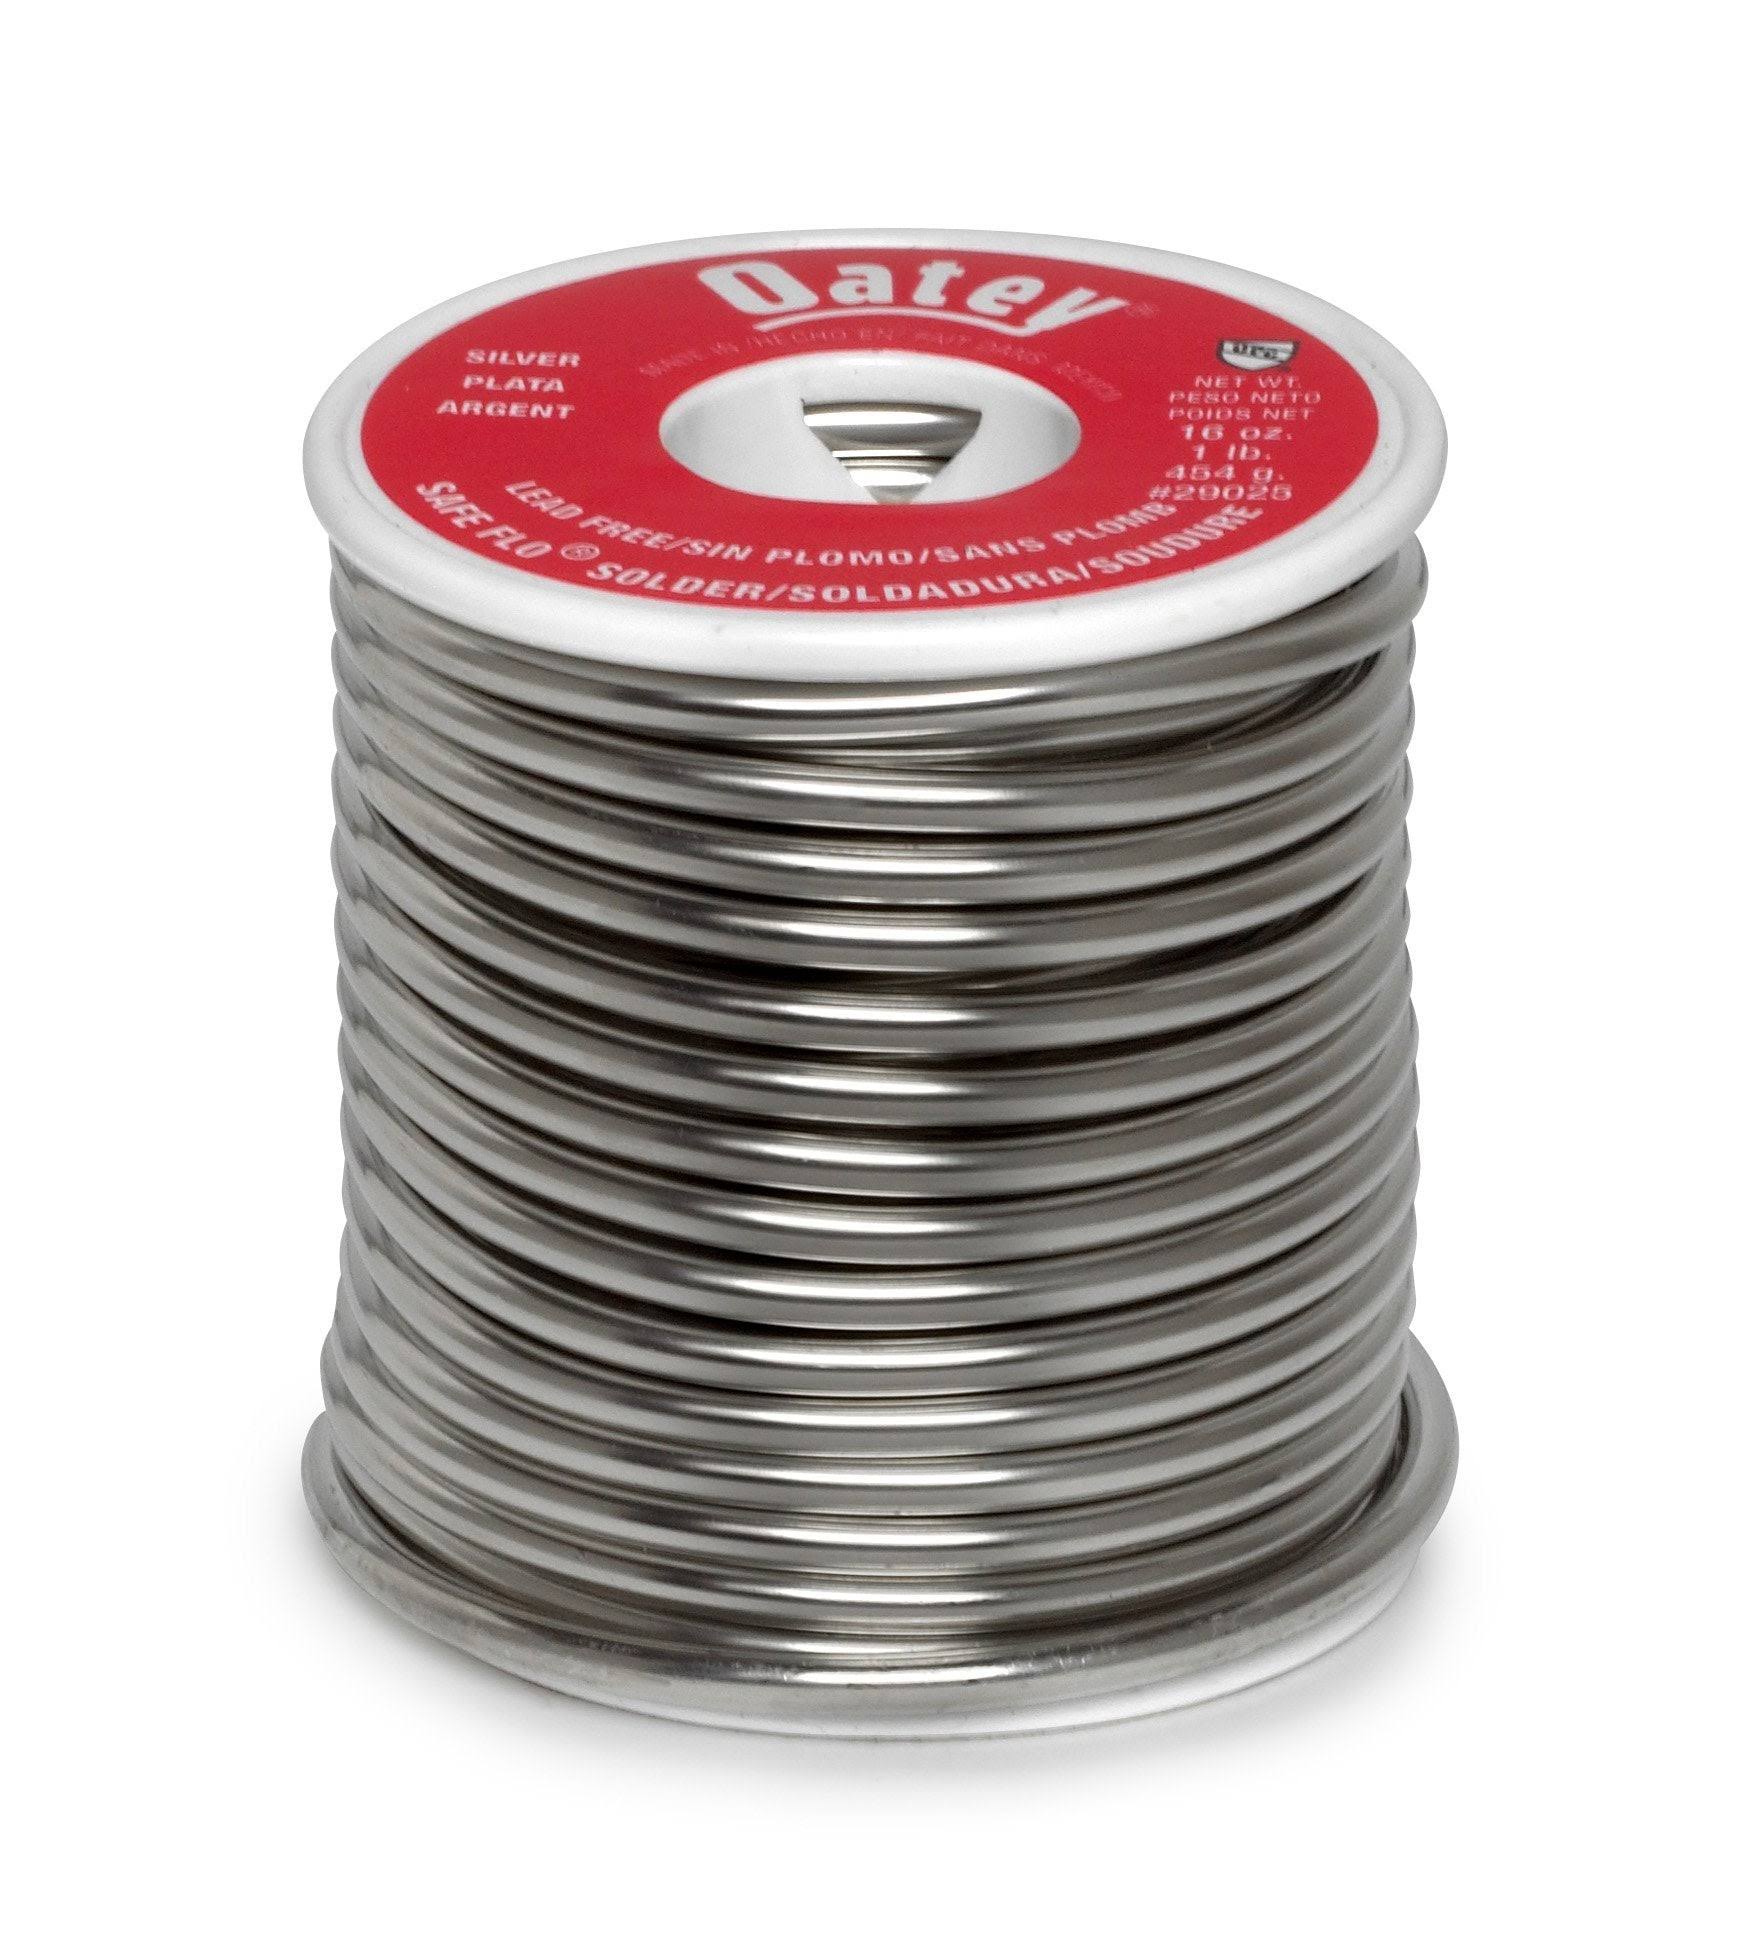 Oatey 29025 Lead Free Solid Wire Solder - Silver, 1lb